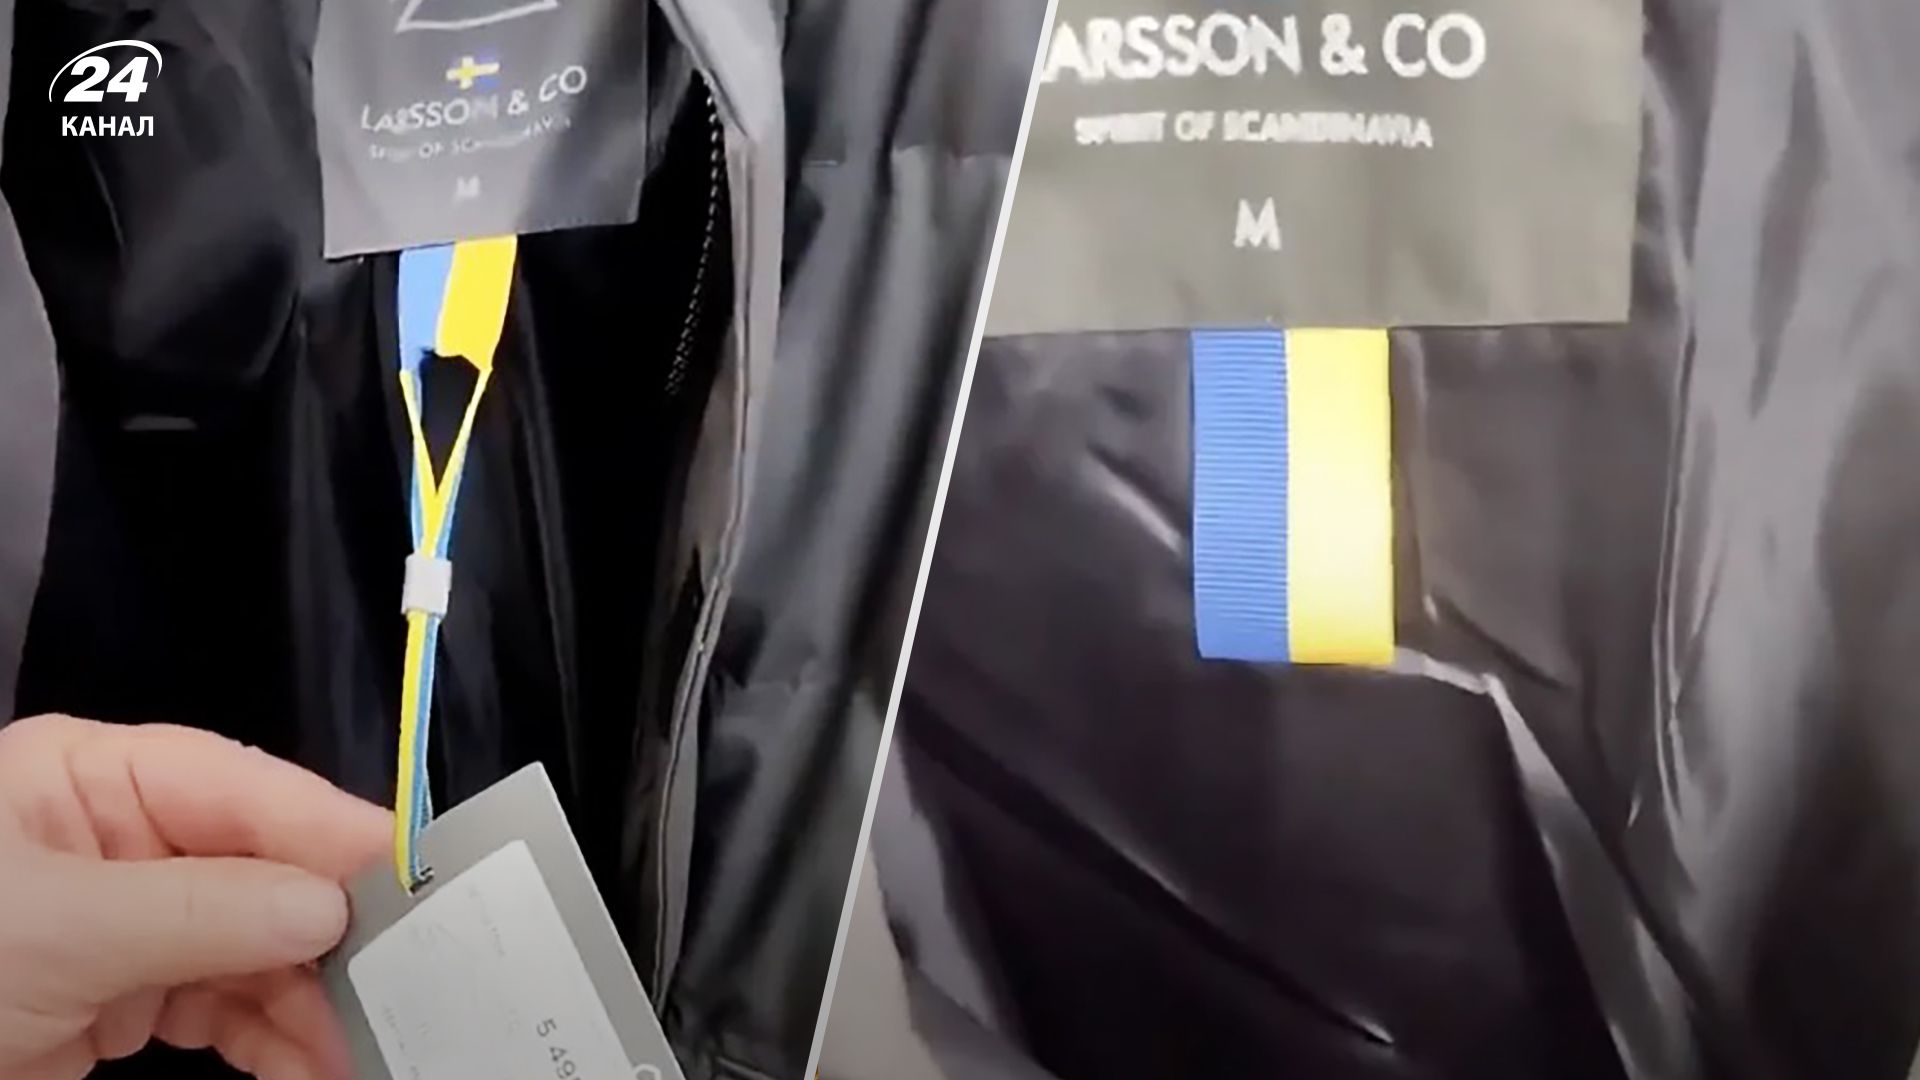 Товар бренда Larsson & Co вызвал истерику у россиян из-за цвета флага Швеции